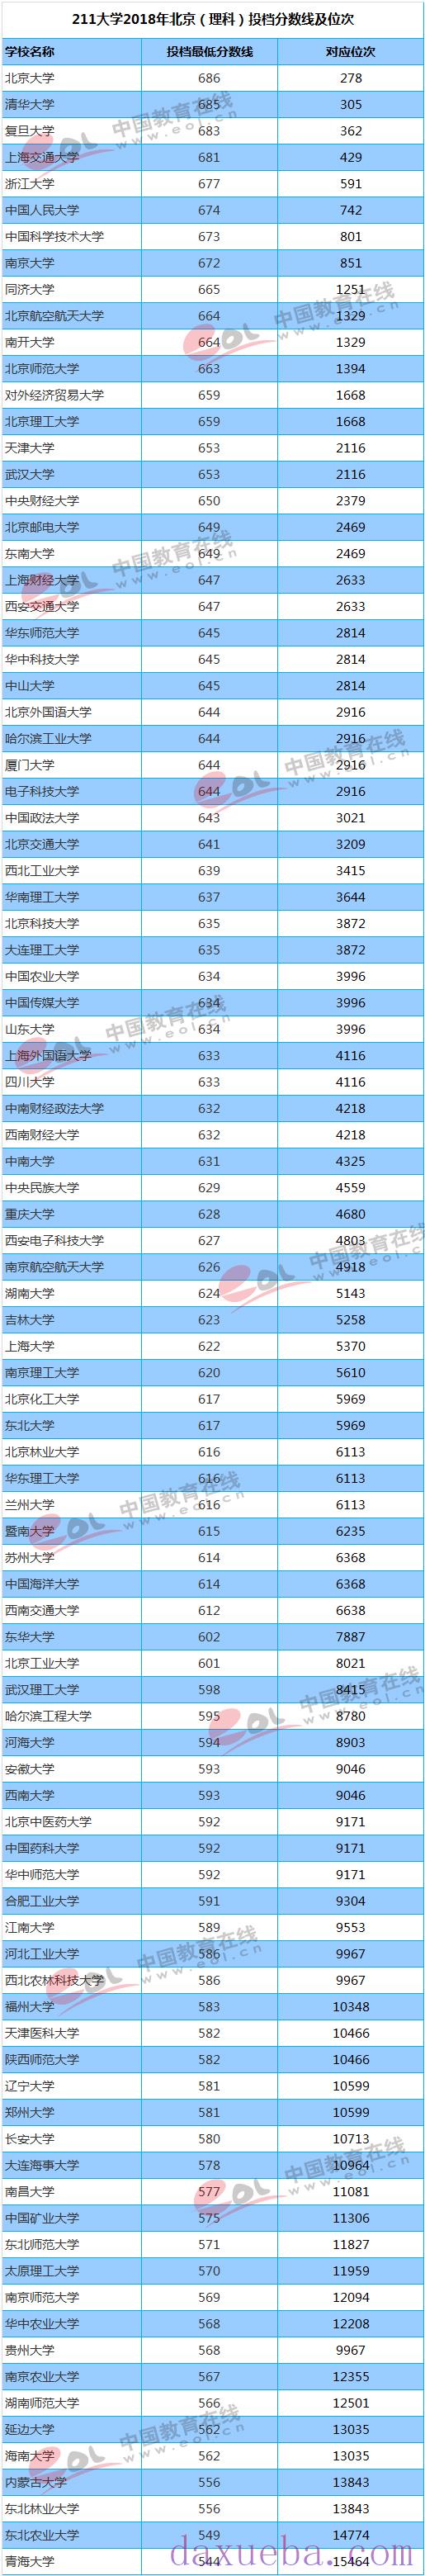 2018-2021年北京高考211大学投档线及最低录取位次统计表 